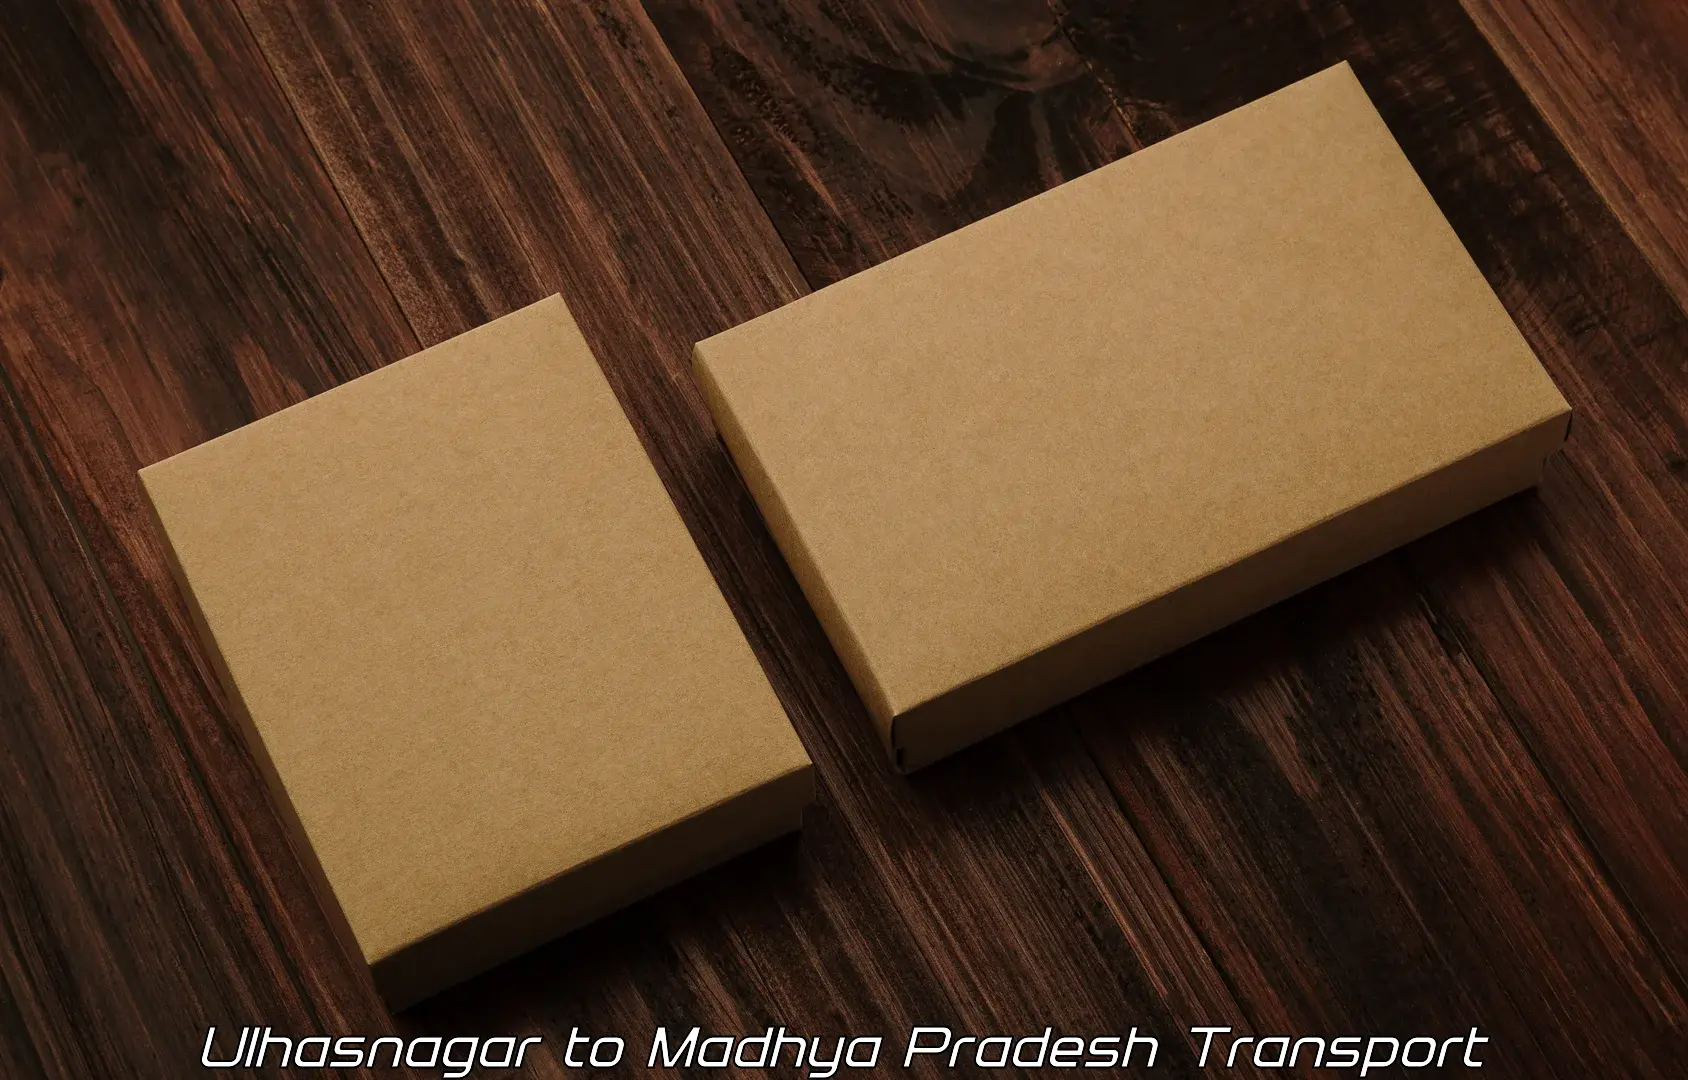 Goods transport services Ulhasnagar to Ashoknagar